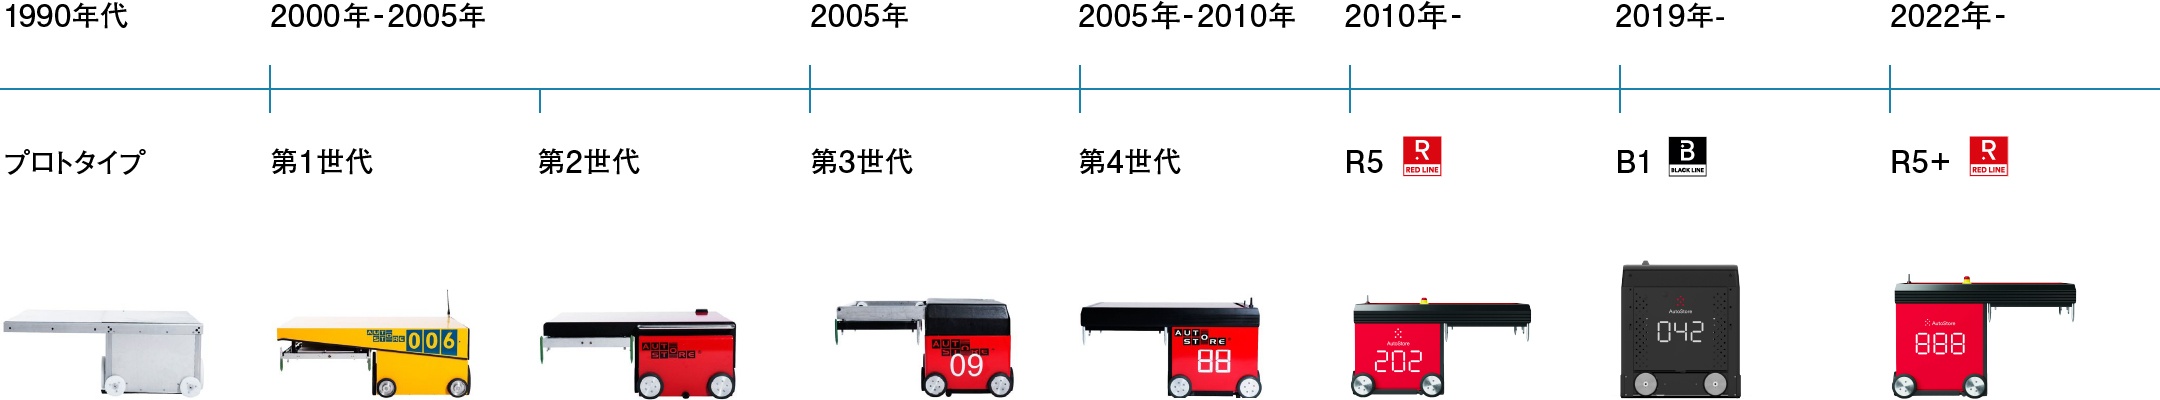 1990年代:プロトタイプ 2000年-2005年:第1世代 第2世代 2005年:第3世代 2005年-2010年:第4世代 2010年-:R5（RED LINE） 2019年-:B1（BLACK LINE） 2022年-:R5+（RED LINE）